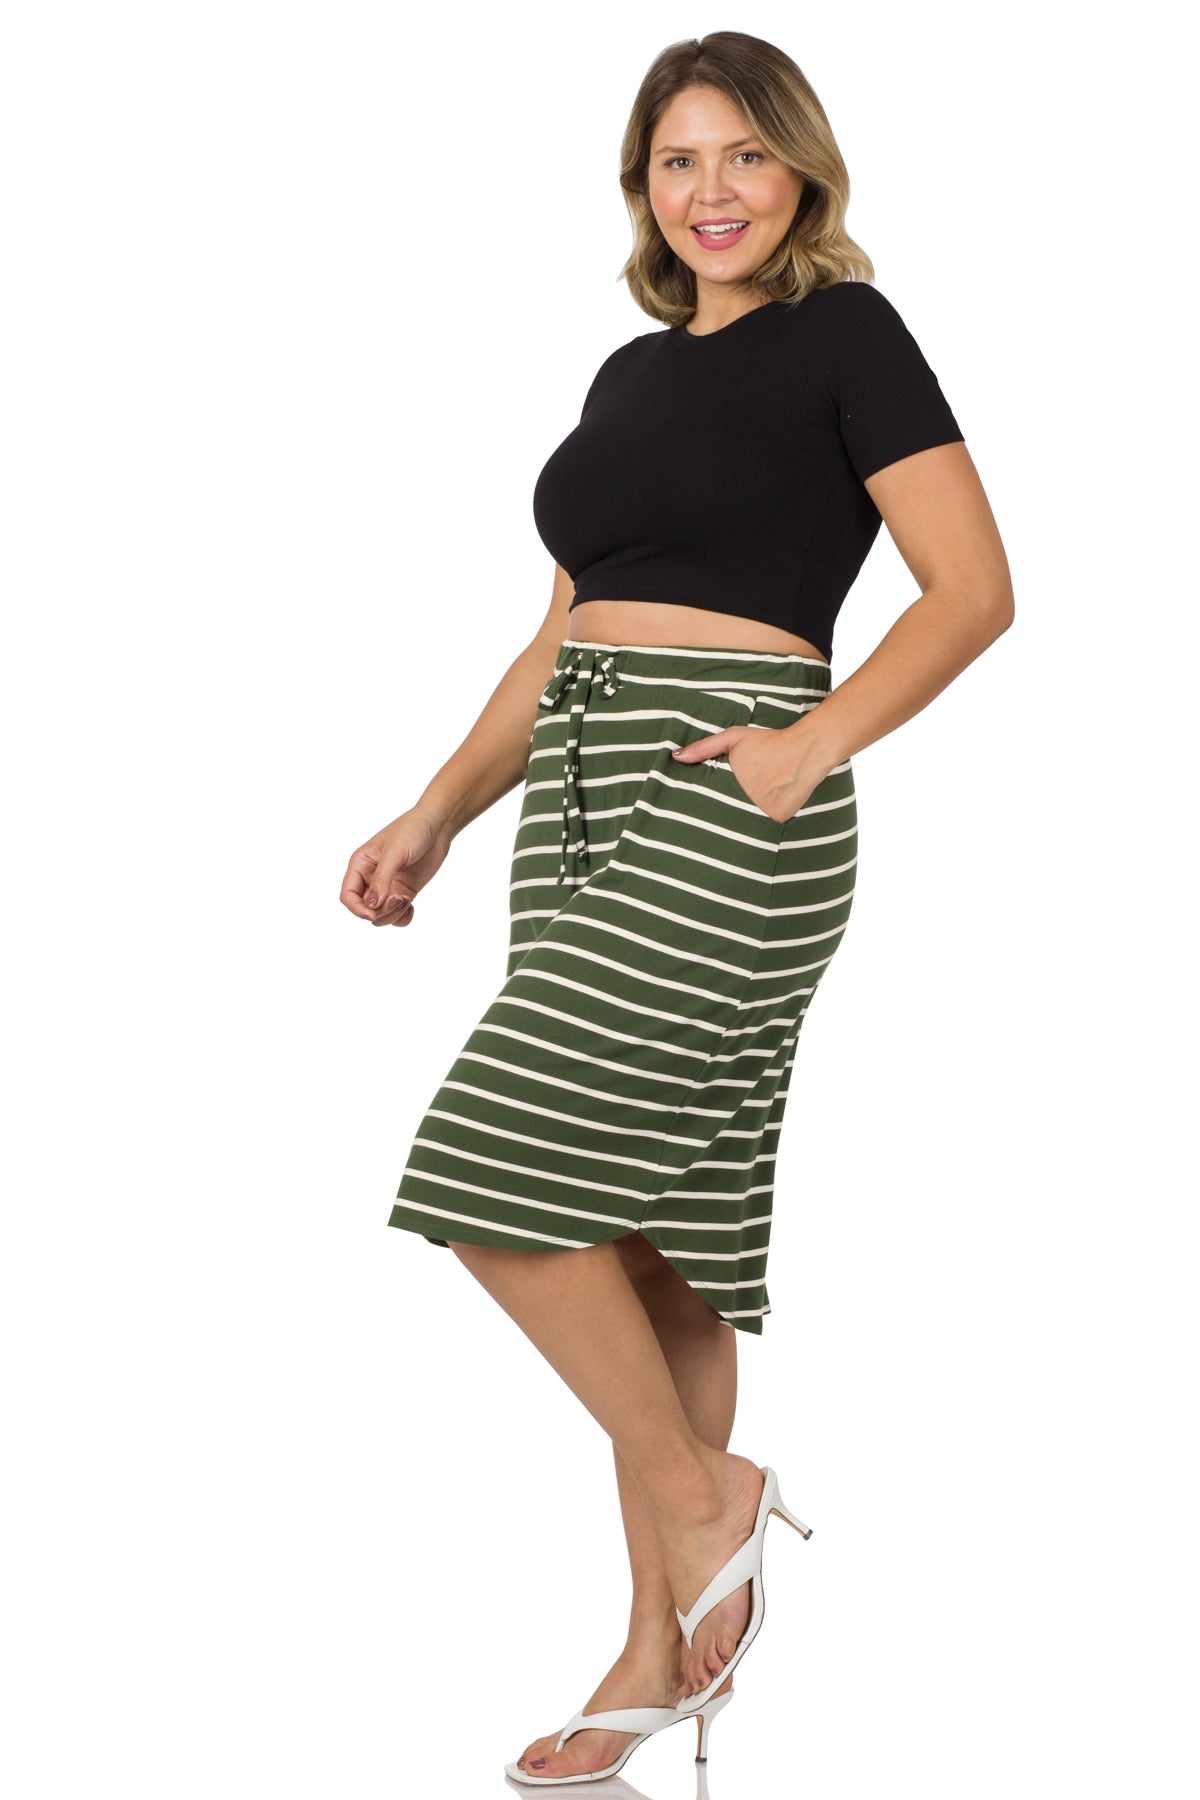 Maddie Weekender Skirt in Army Green/Ivory- Plus